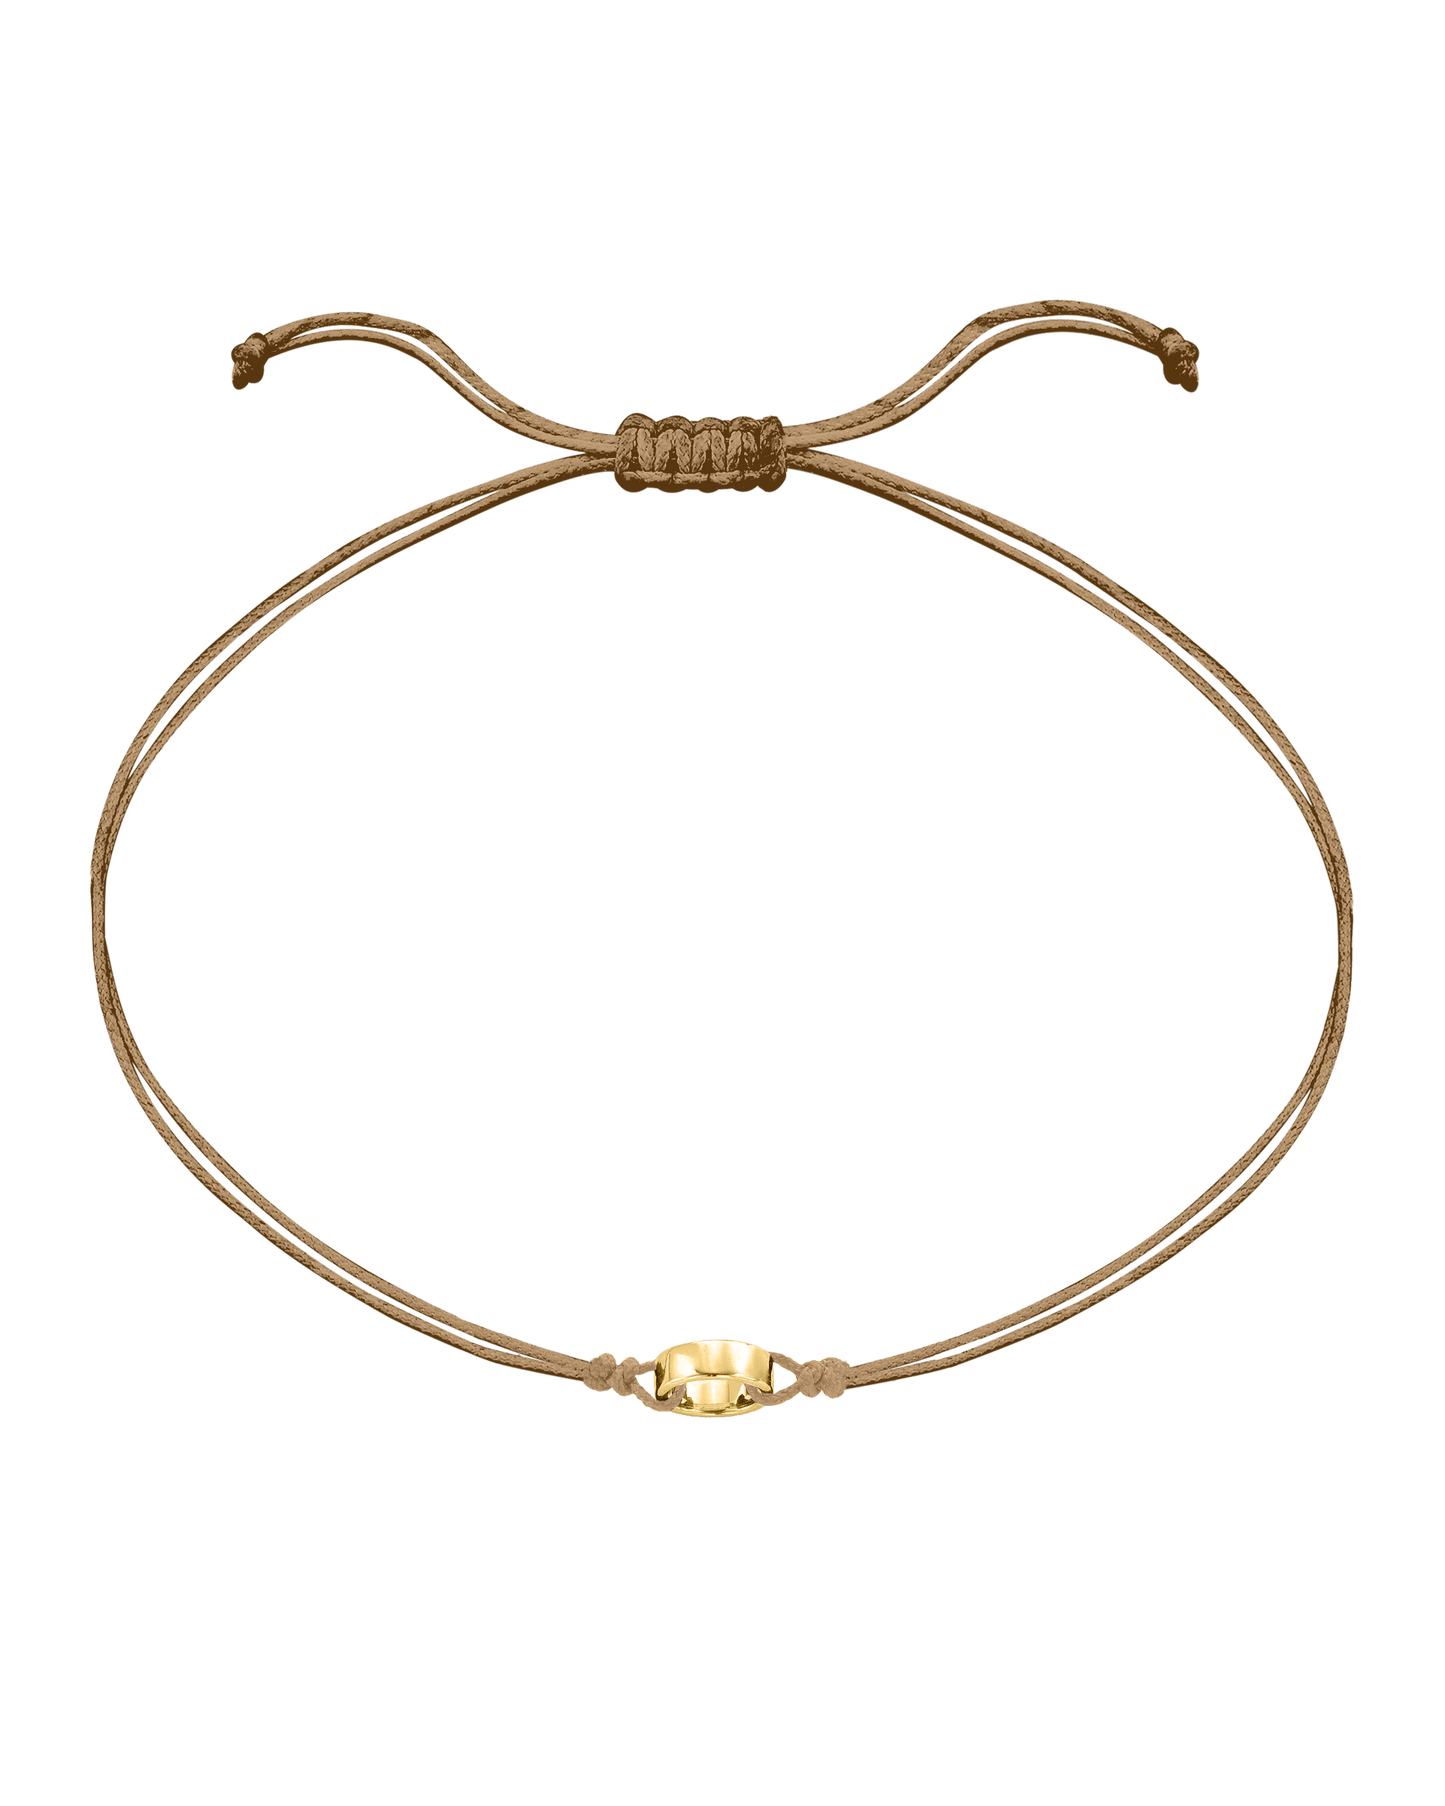 Engravable Links of Love - 18K Gold Vermeil Bracelets magal-dev 1 Camel 